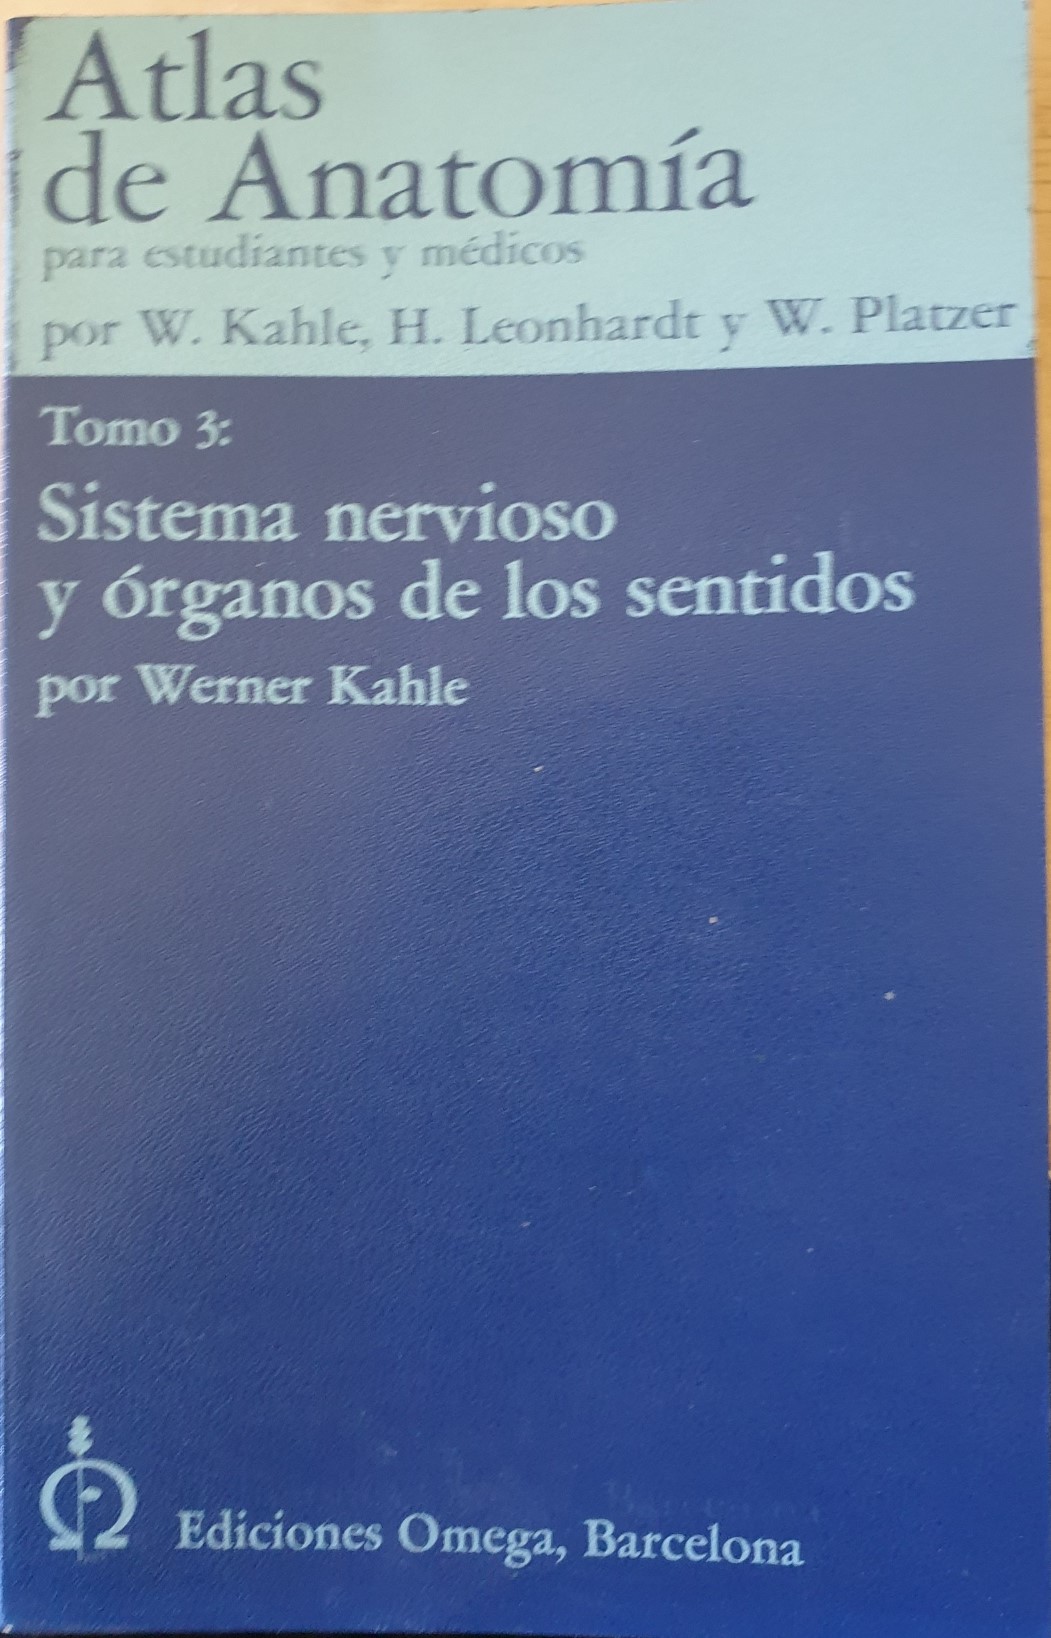 ATLAS DE ANATOMIA. TOMO 3: SISTEMA NERVIOSO Y ORGANOS DE LOS SENTIDOS. - KAHLE/LEONHARDT/PLTZER, W./H./W.